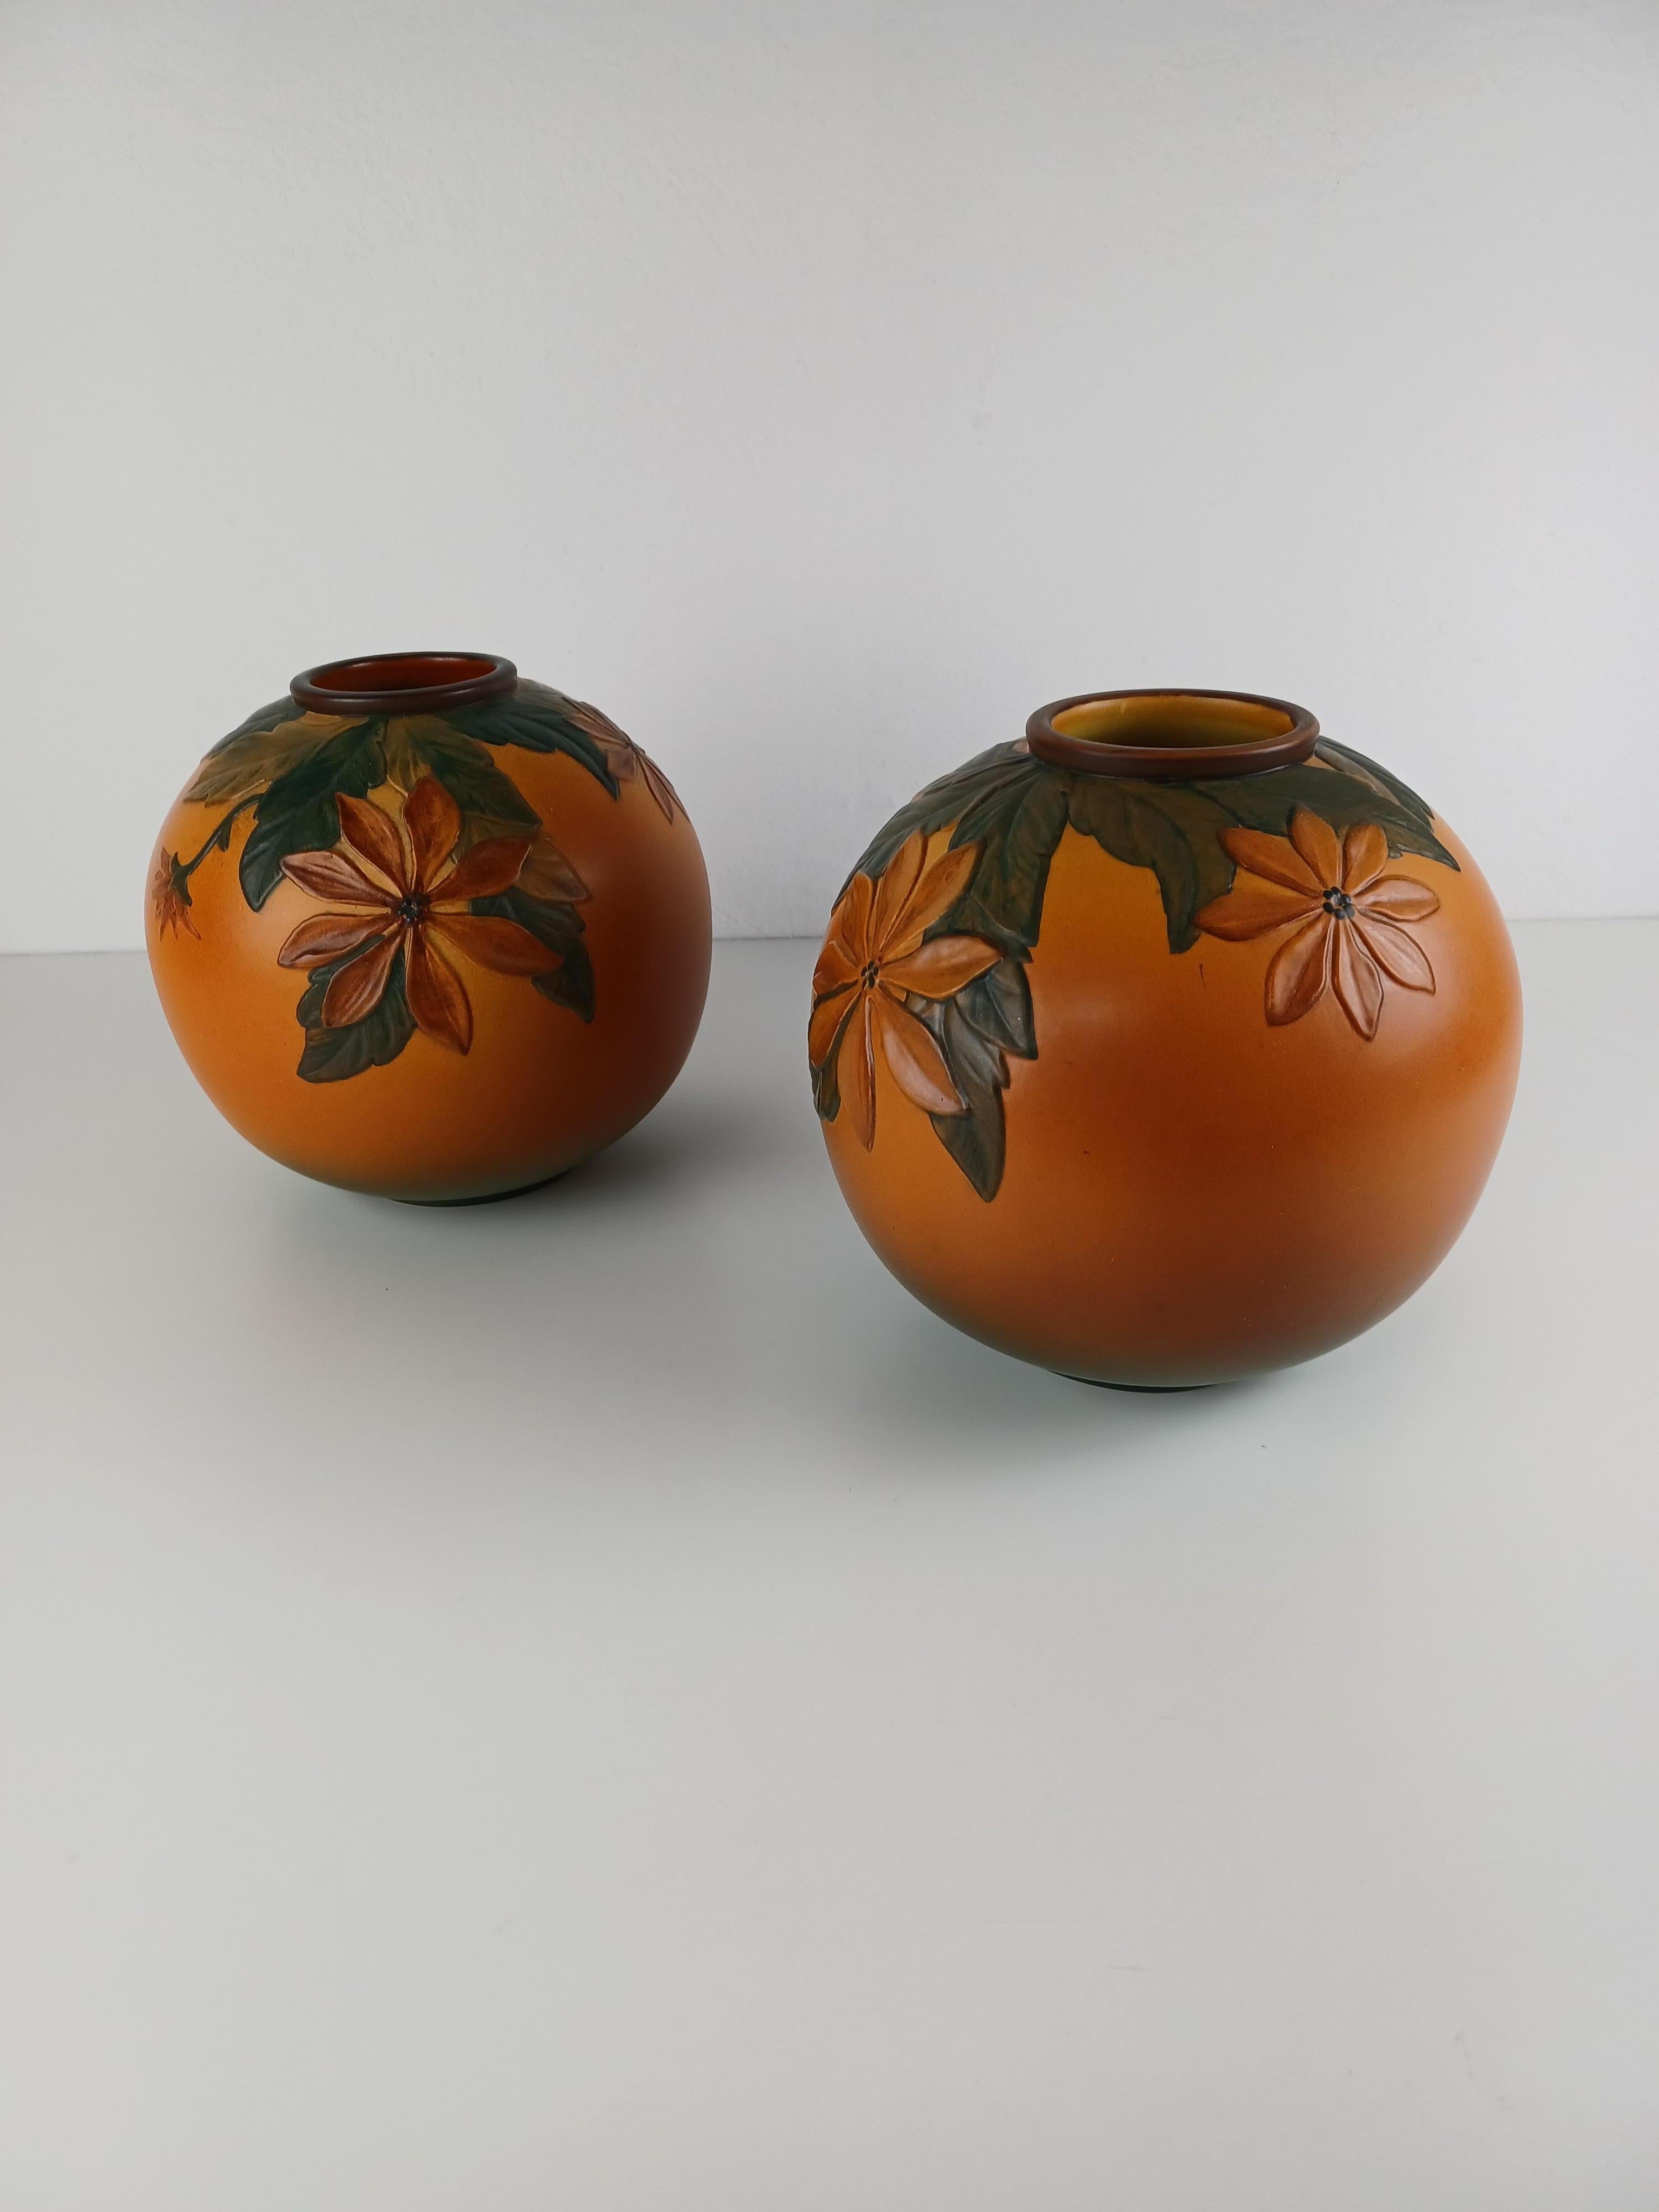 Ensemble de deux vases art nouveau danois décorés de fleurs, faits à la main par P. Ipsen Enke

Les vases Art nouveau ont été conçus par Axel Sørensen en 1939 et présentent des fleurs et des feuilles vivantes très bien réalisées. Les vases ont été